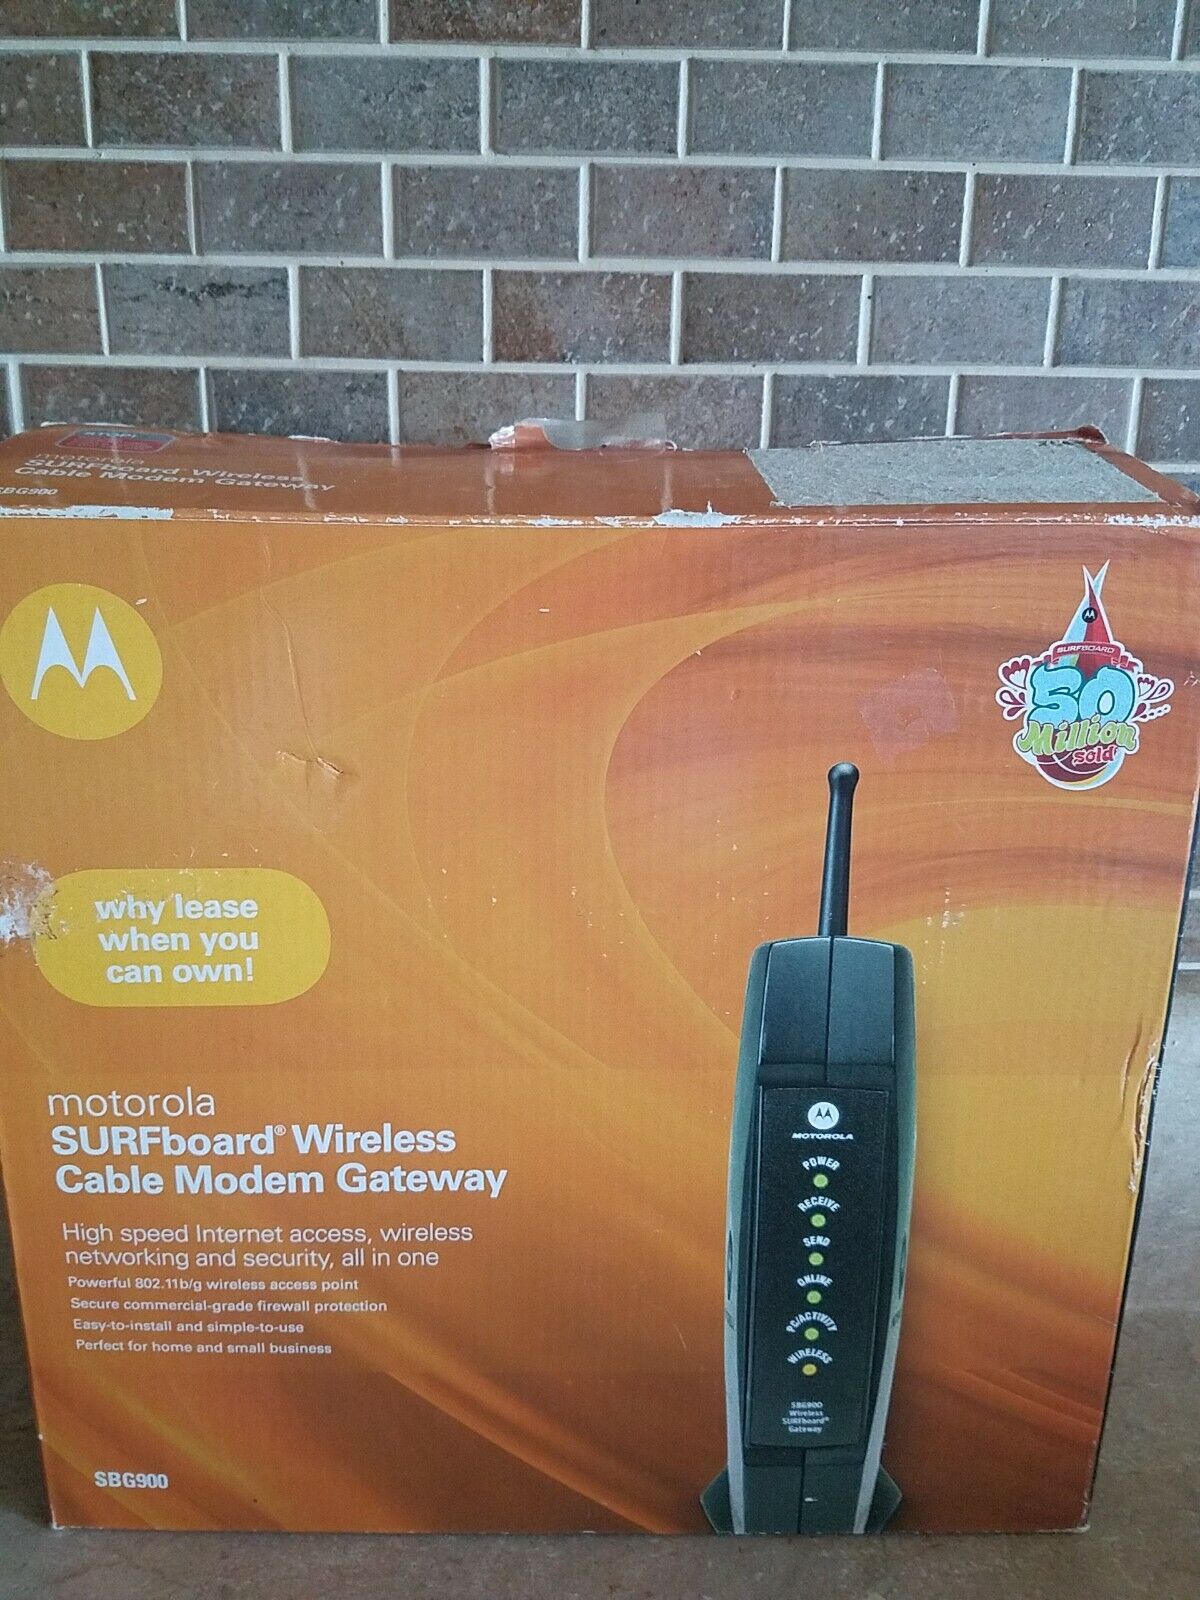 Motorola Surfboard SBG900 Wireless Cable Modem